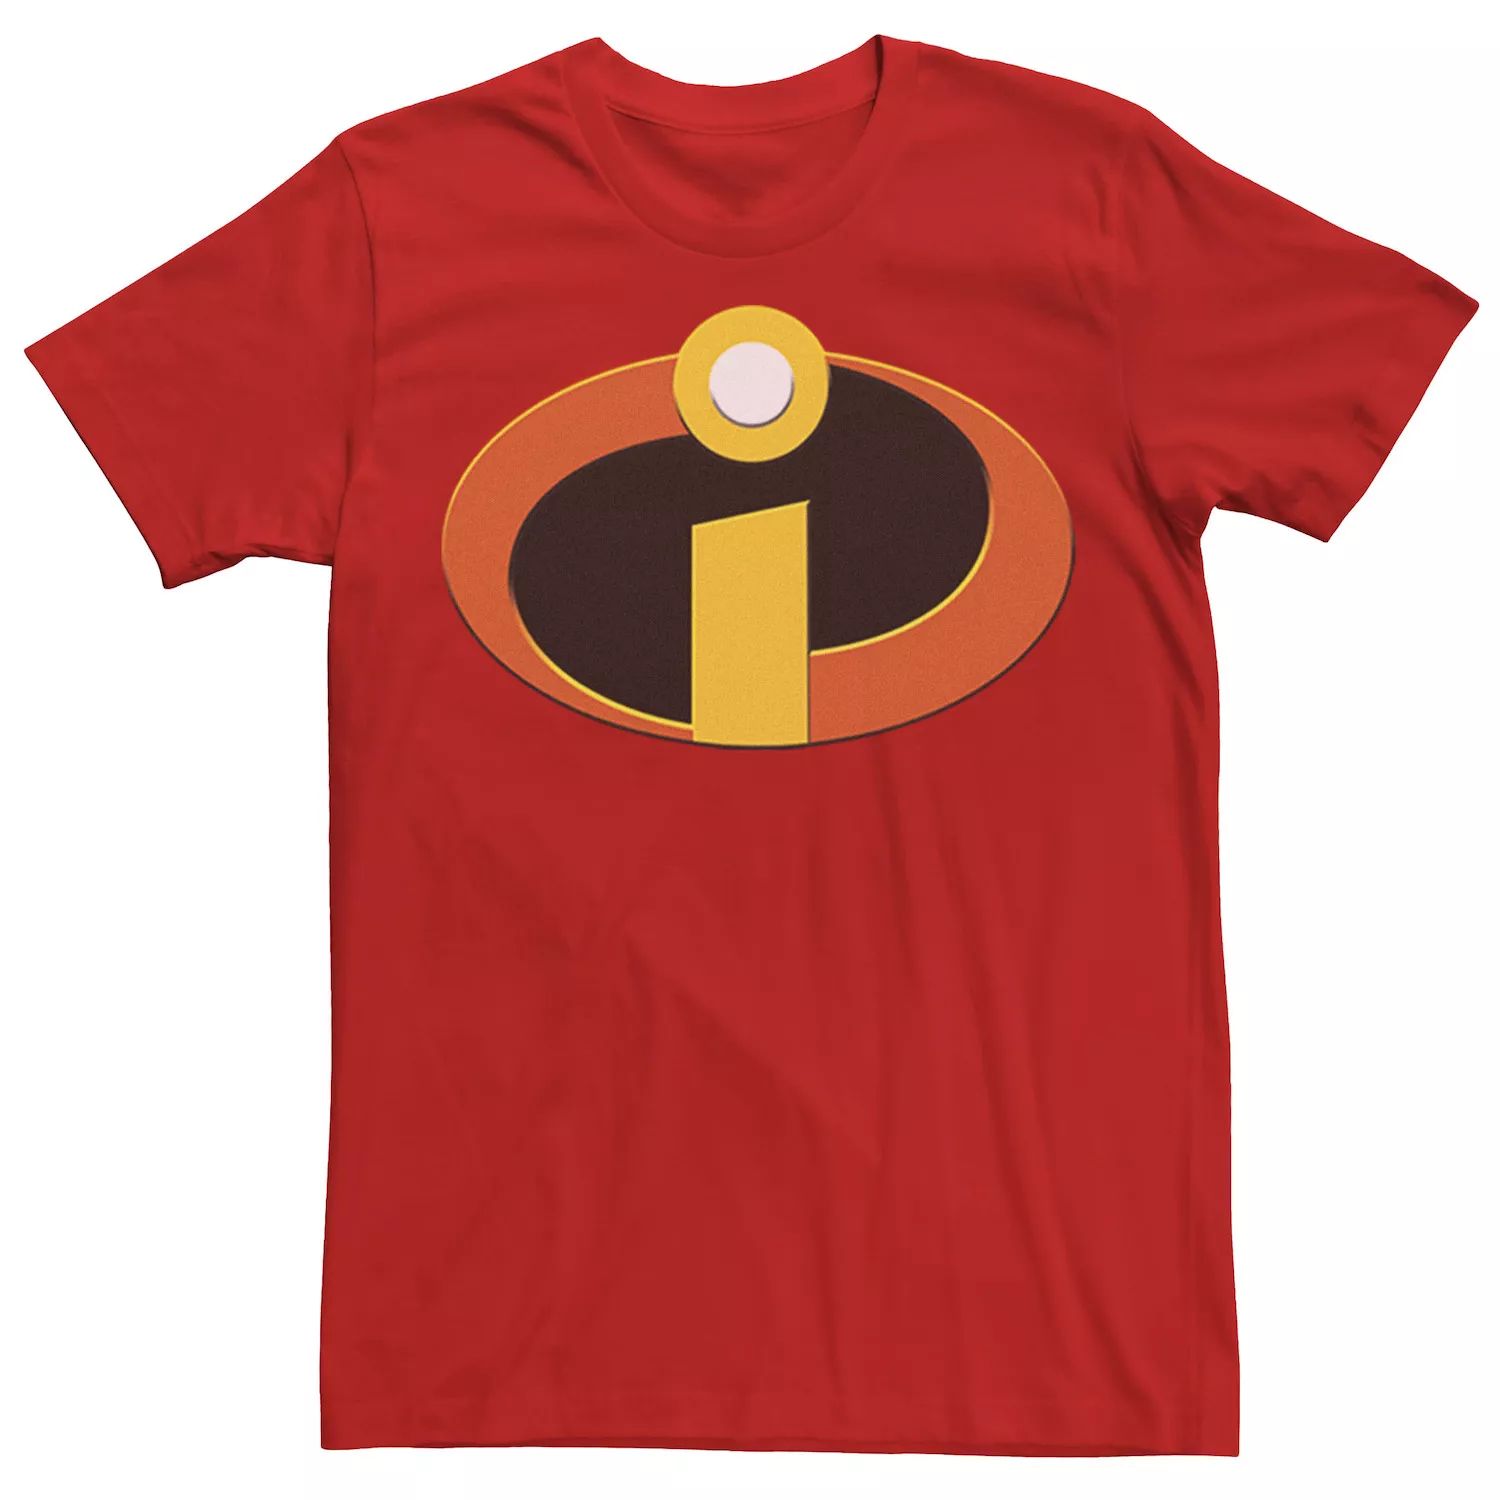 Мужская футболка с логотипом Incredibles Disney / Pixar мужская футболка с логотипом фильма хороший динозавр disney pixar